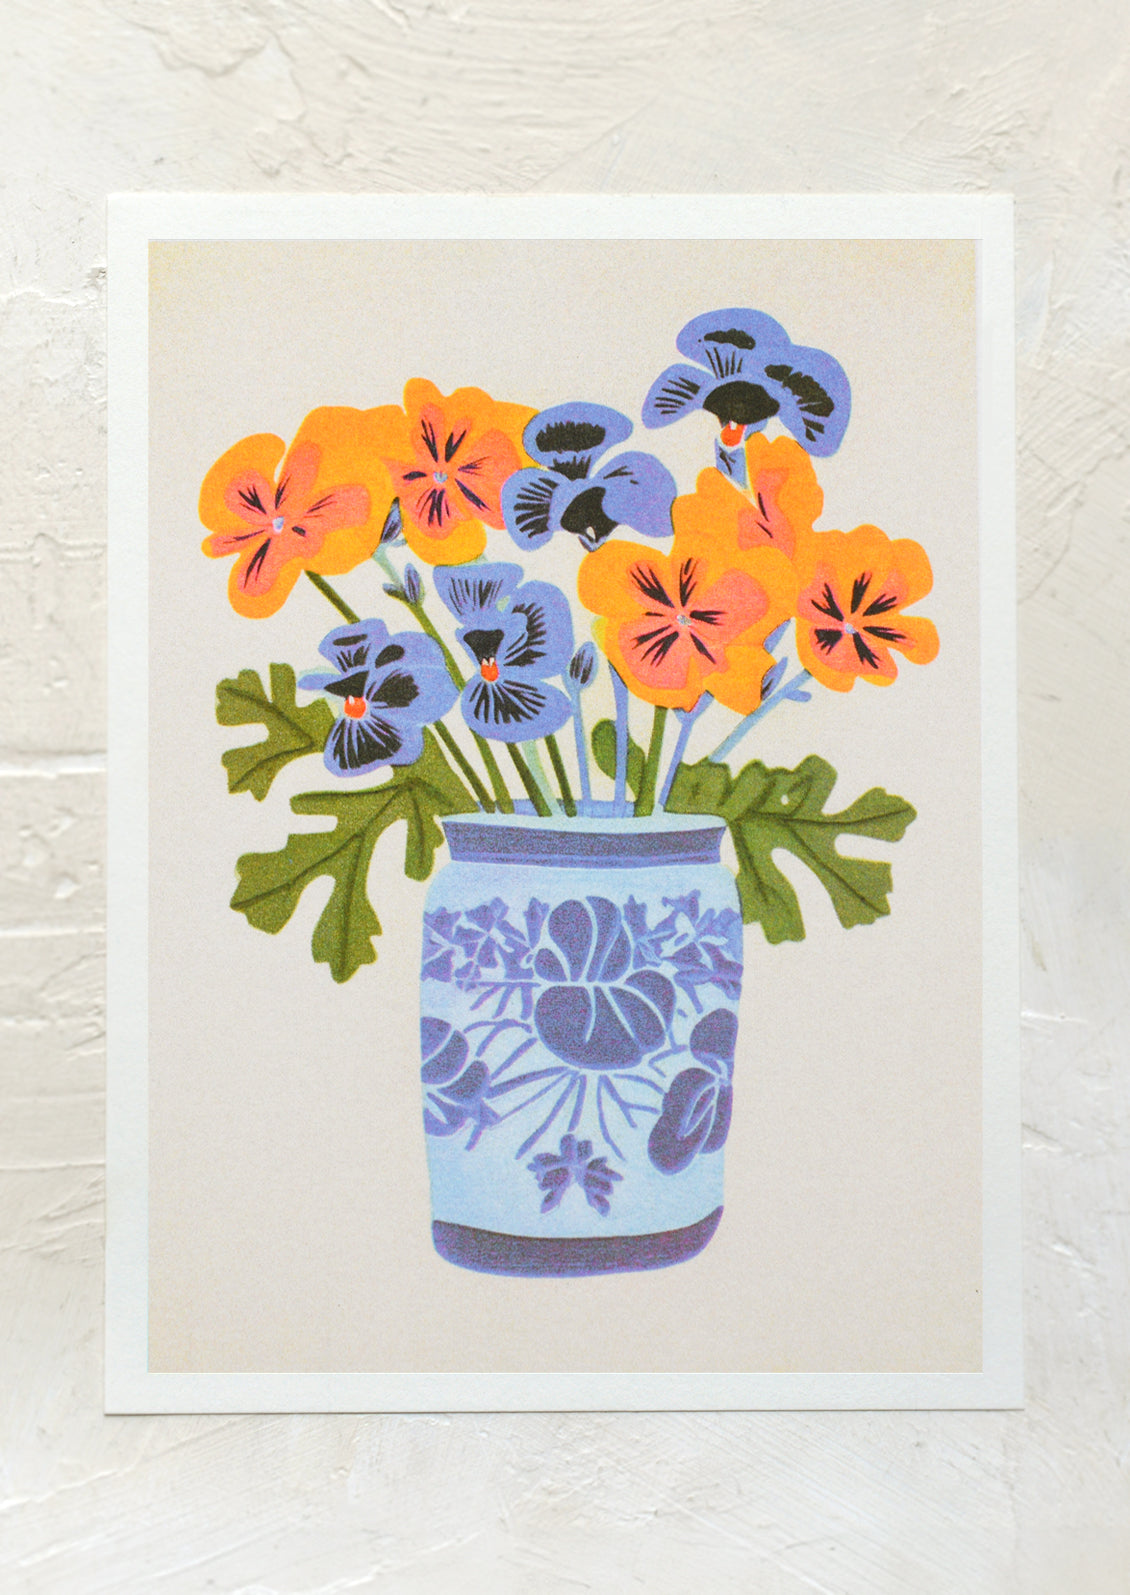 An art print of orange and blue pansies in blue vase.